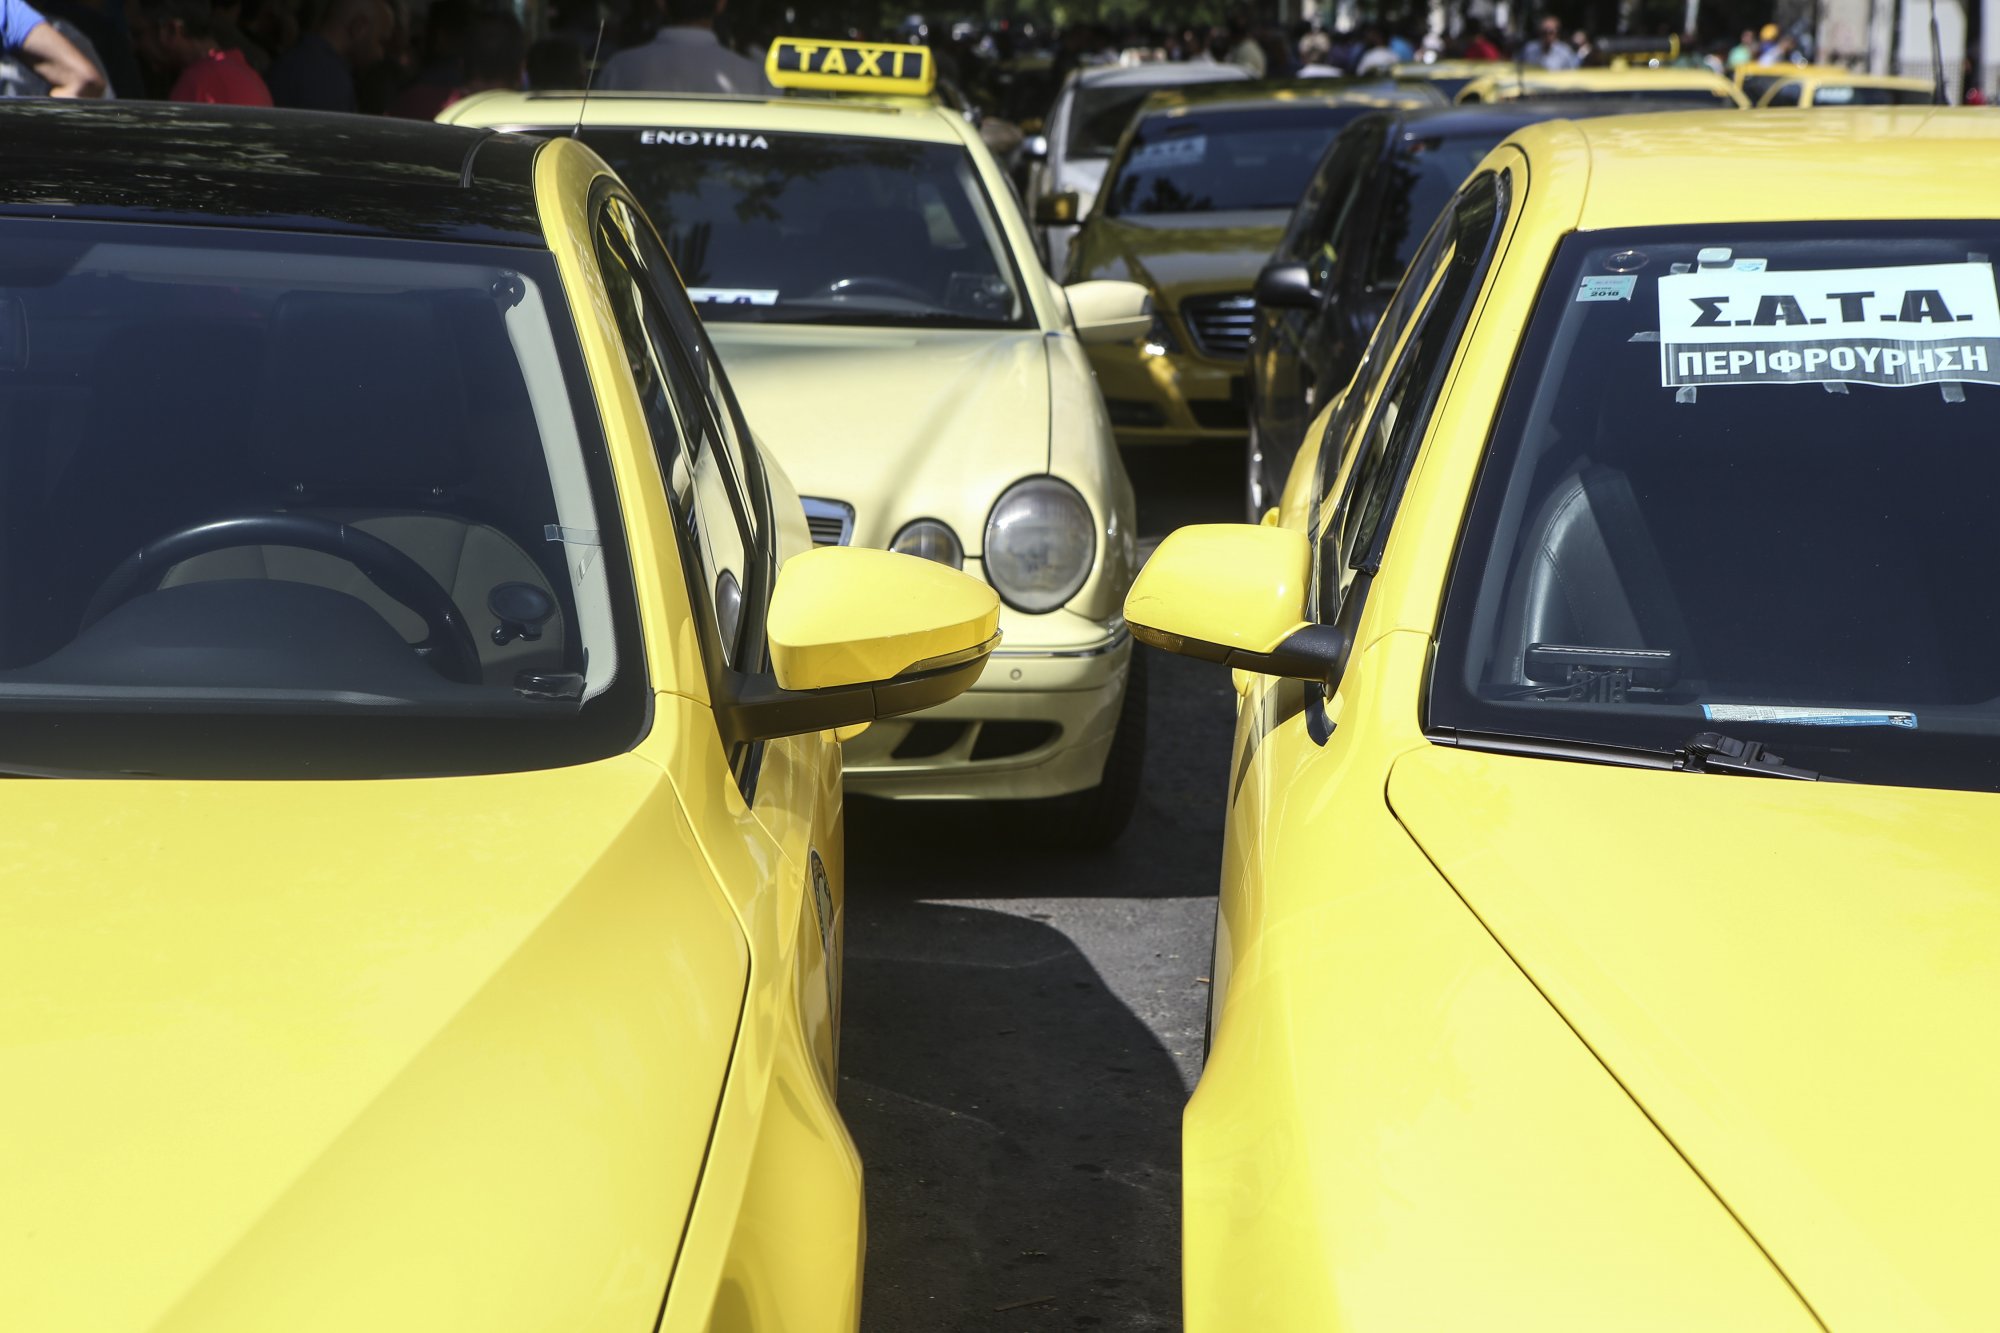 Χωρίς ταξί από τις 9 έως τις 4 το απόγευμα - Κινητοποιήσεις του ΣΑΤΑ για το φορολογικό